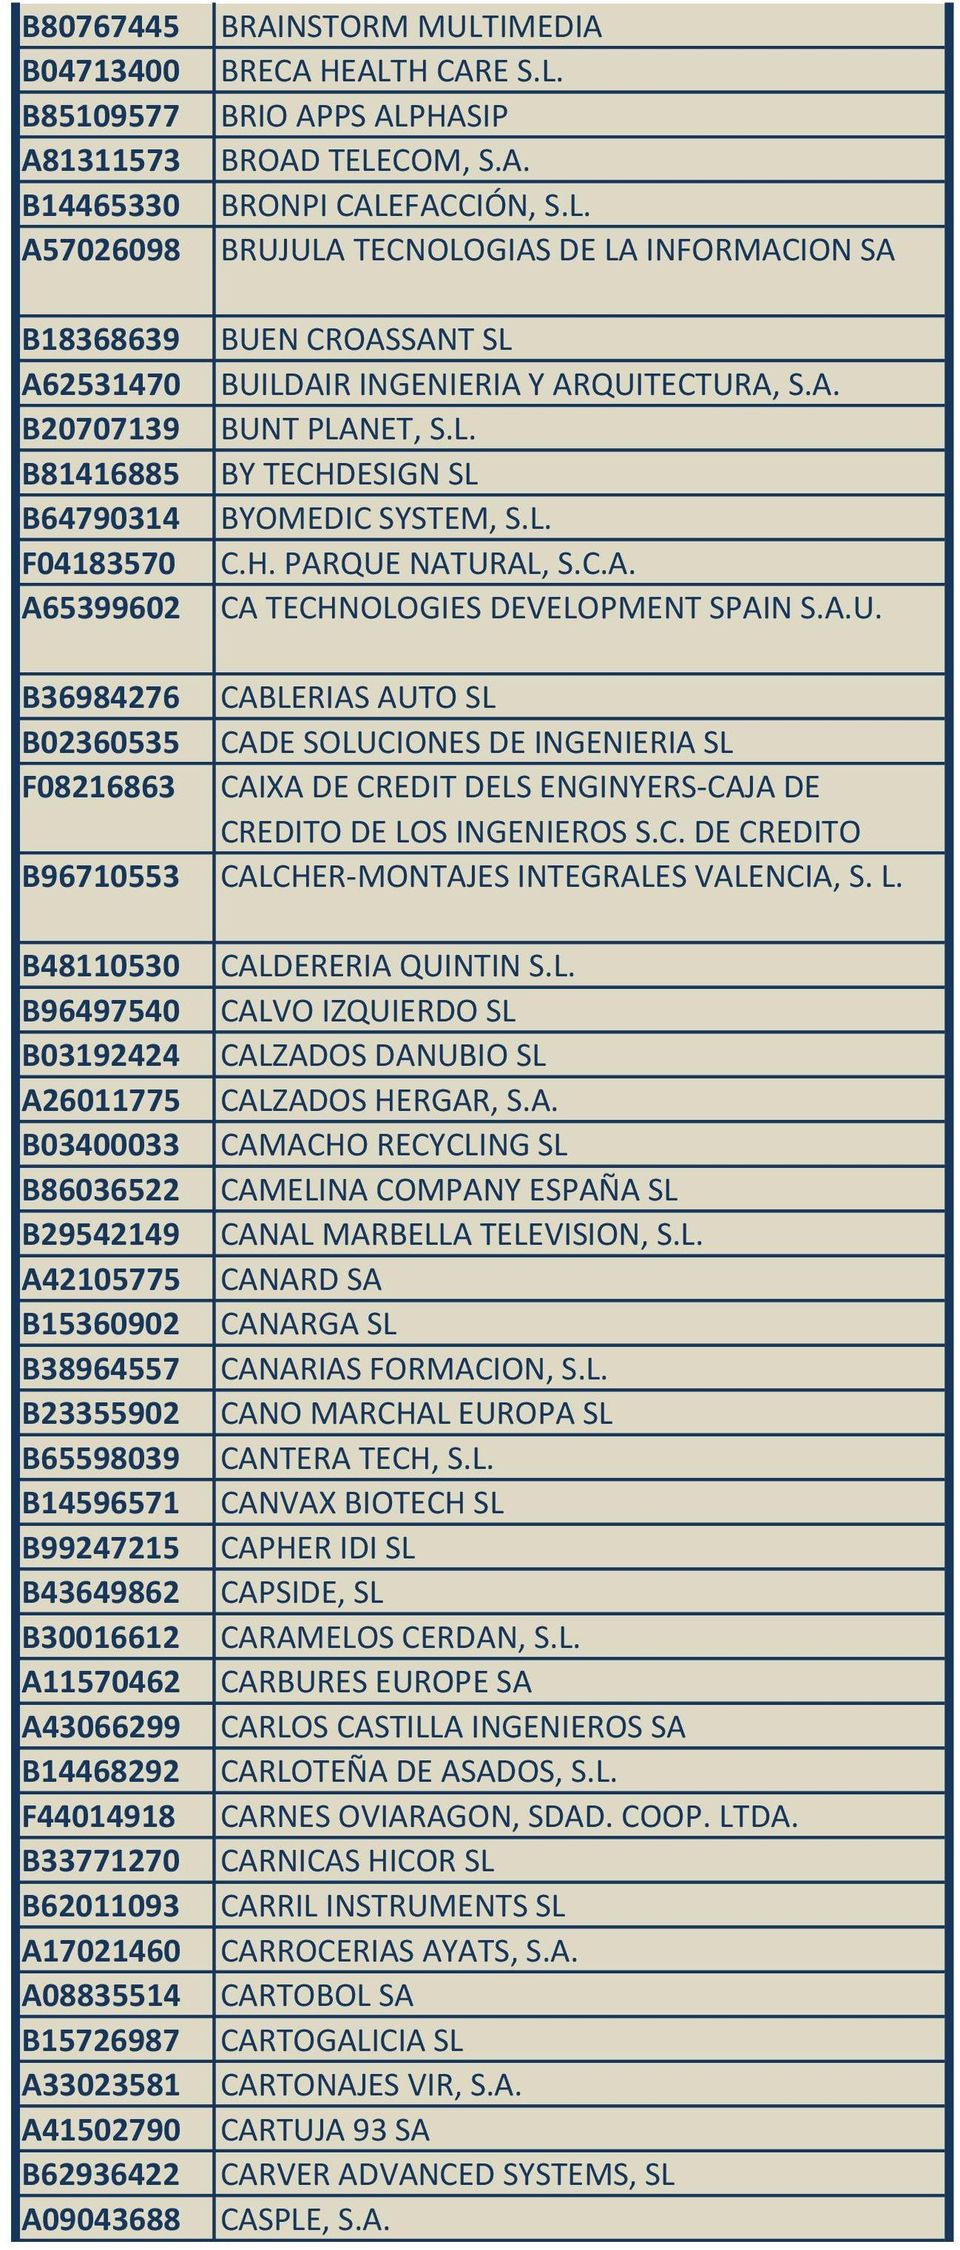 C.A. CA TECHNOLOGIES DEVELOPMENT SPAIN S.A.U. B36984276 CABLERIAS AUTO SL B02360535 CADE SOLUCIONES DE INGENIERIA SL F08216863 CAIXA DE CREDIT DELS ENGINYERS-CAJA DE CREDITO DE LOS INGENIEROS S.C. DE CREDITO B96710553 CALCHER-MONTAJES INTEGRALES VALENCIA, S.